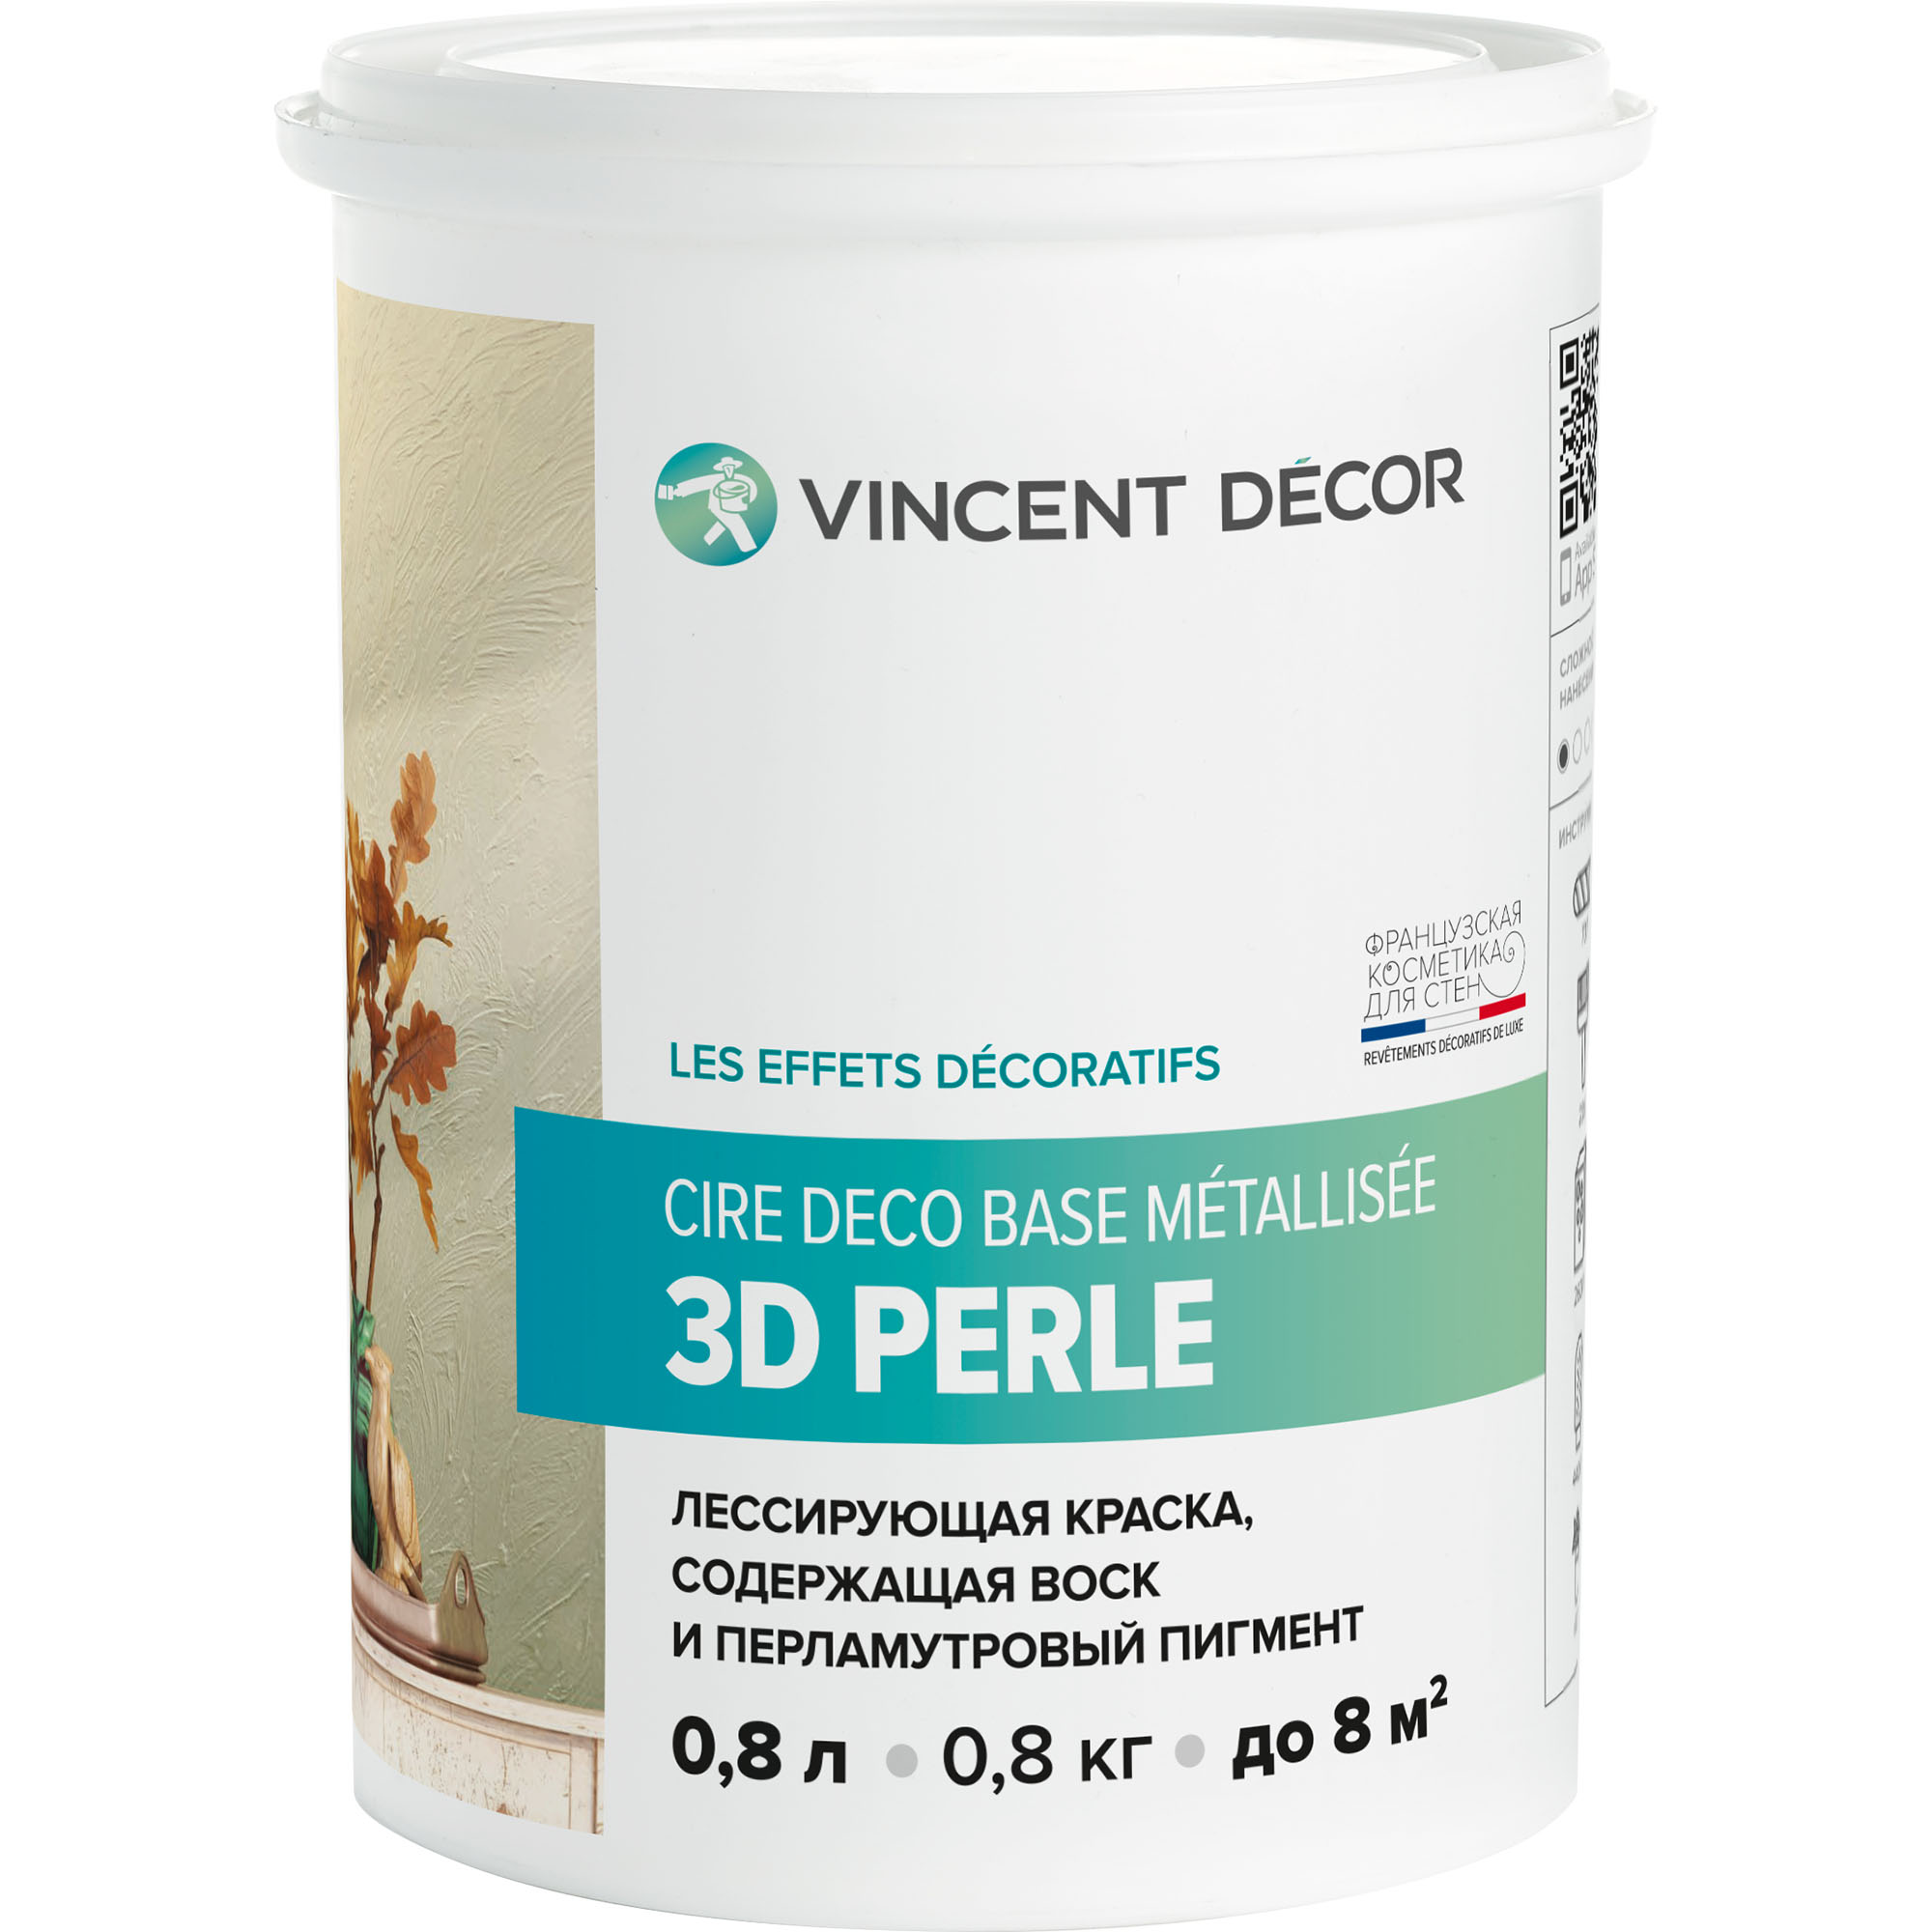 фото Краска лессирующая для декоративных покрытий vincent decor cire deco base metallisee 3d perle золотистый перламутр 0,8 л